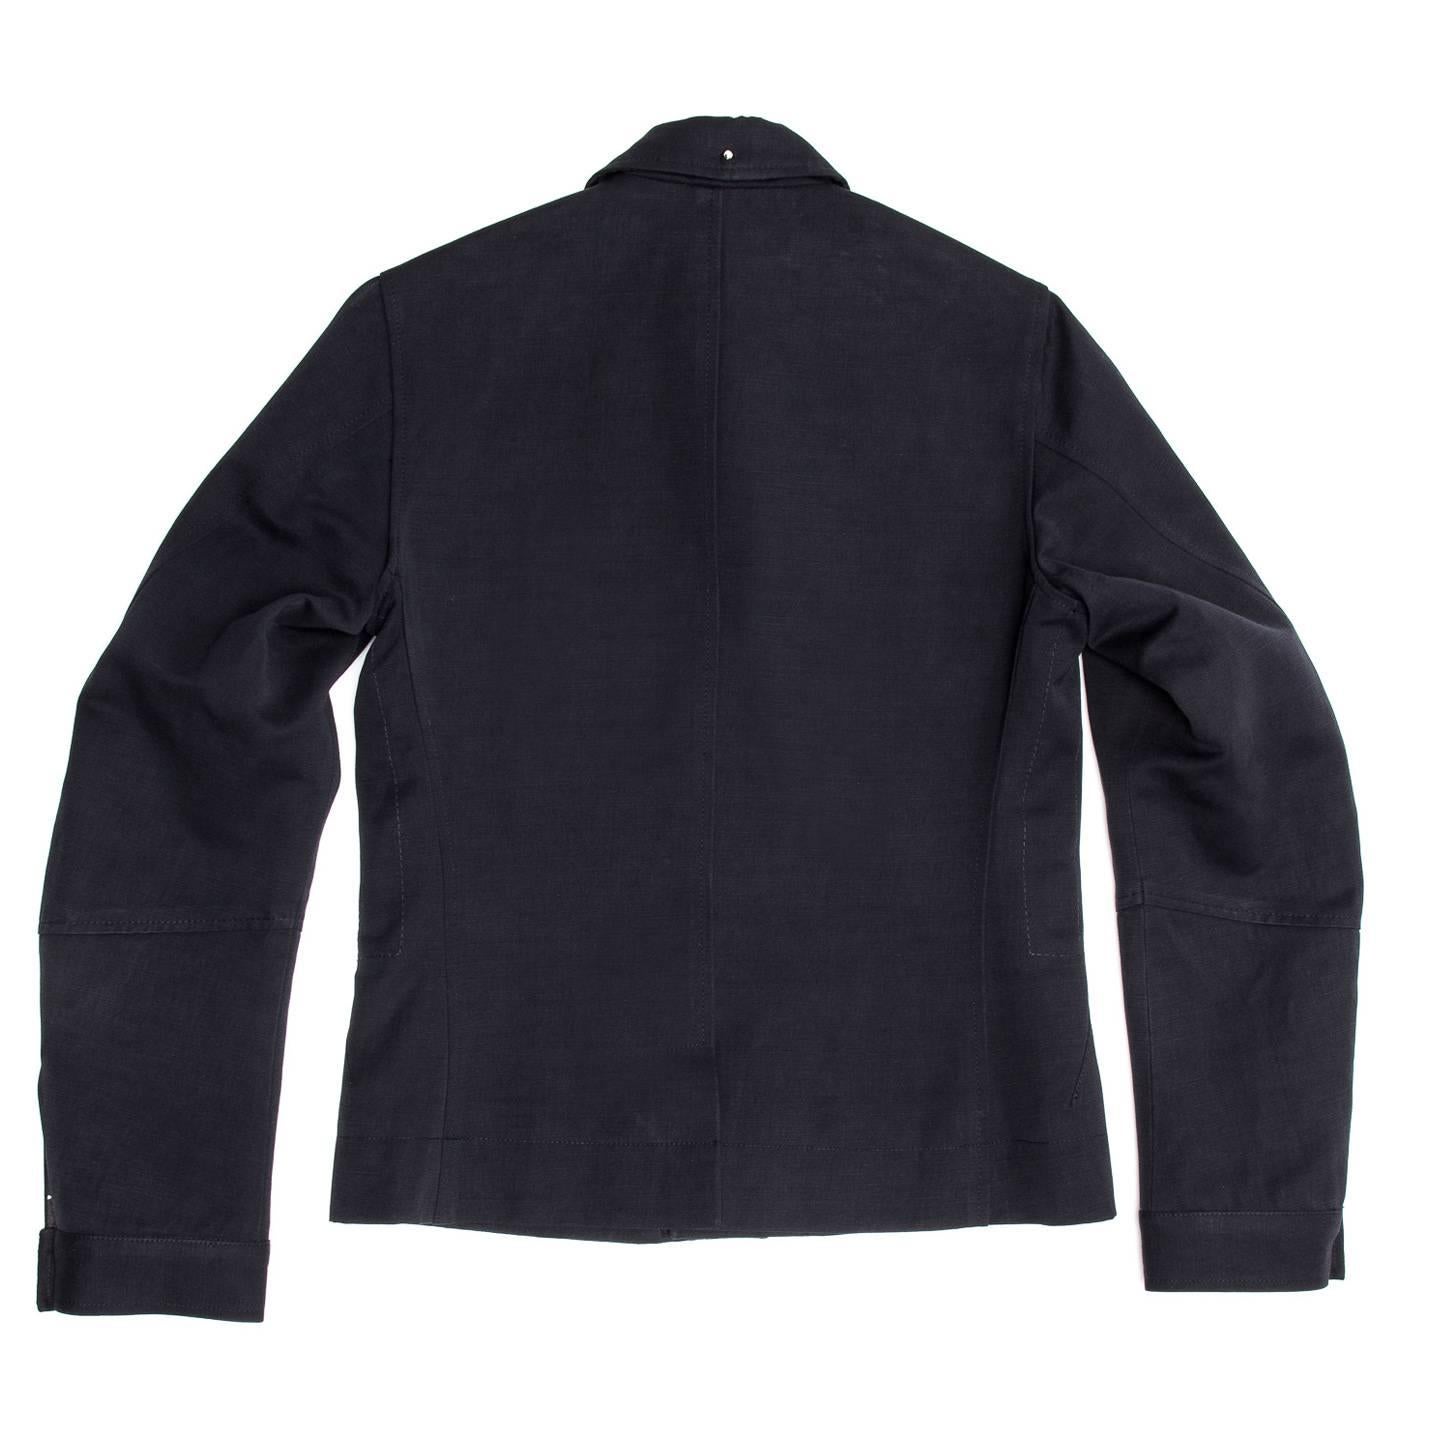 Black Kinder Fashion Design Navy Cotton Casual Jacket For Sale